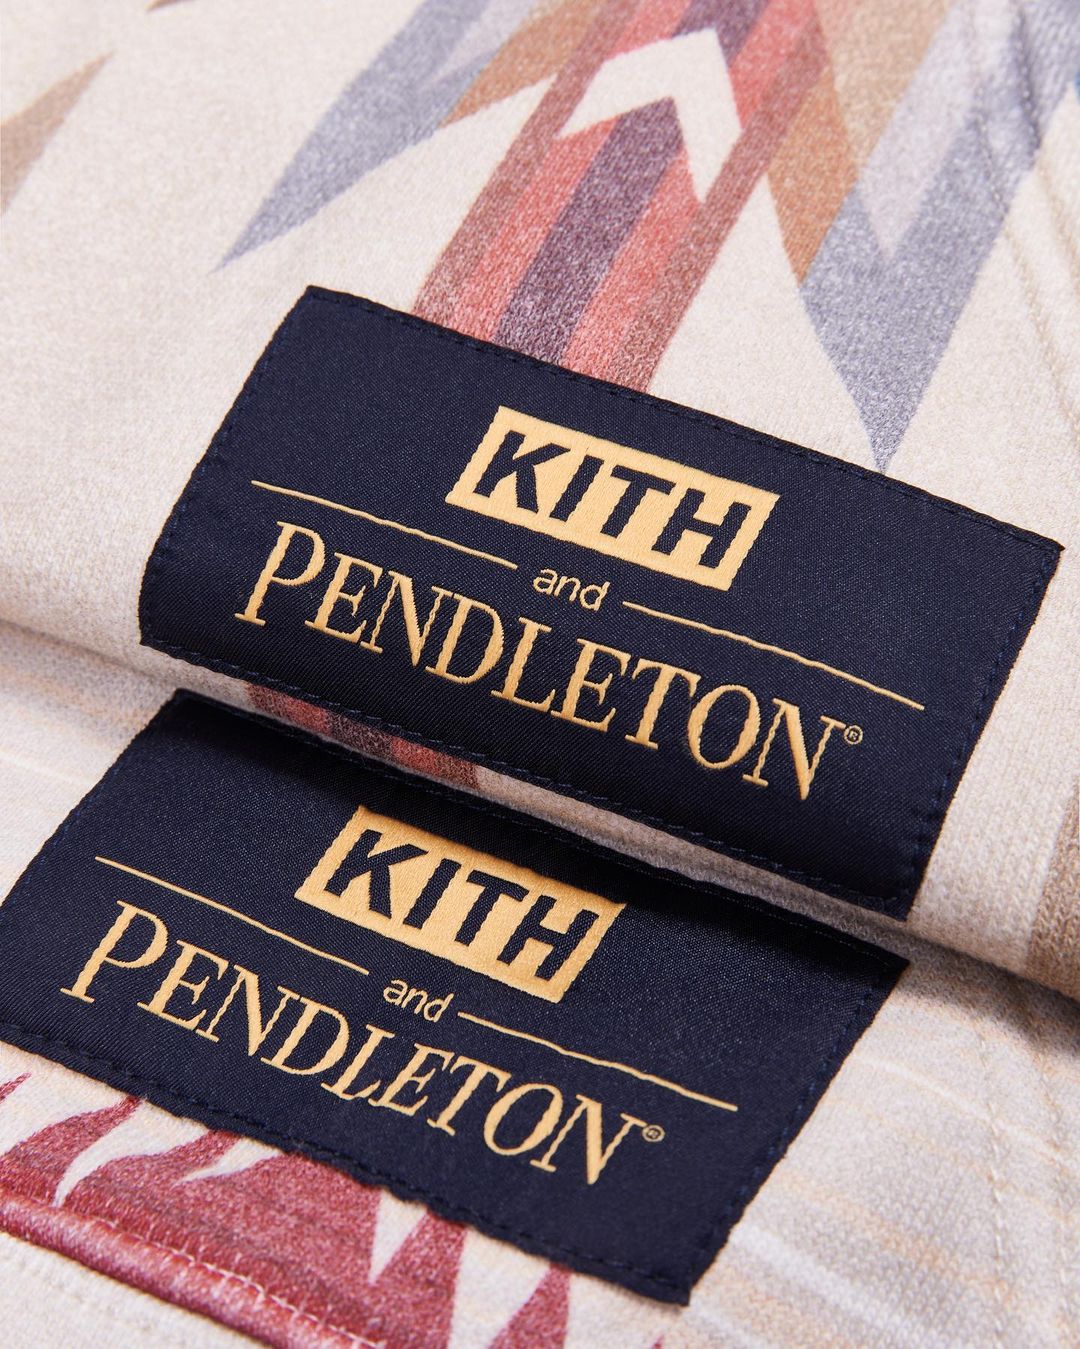 【ペンドルトン/PENDLETON】KITH MONDAY PROGRAM 2020年 第39弾が11/9発売 (キス)